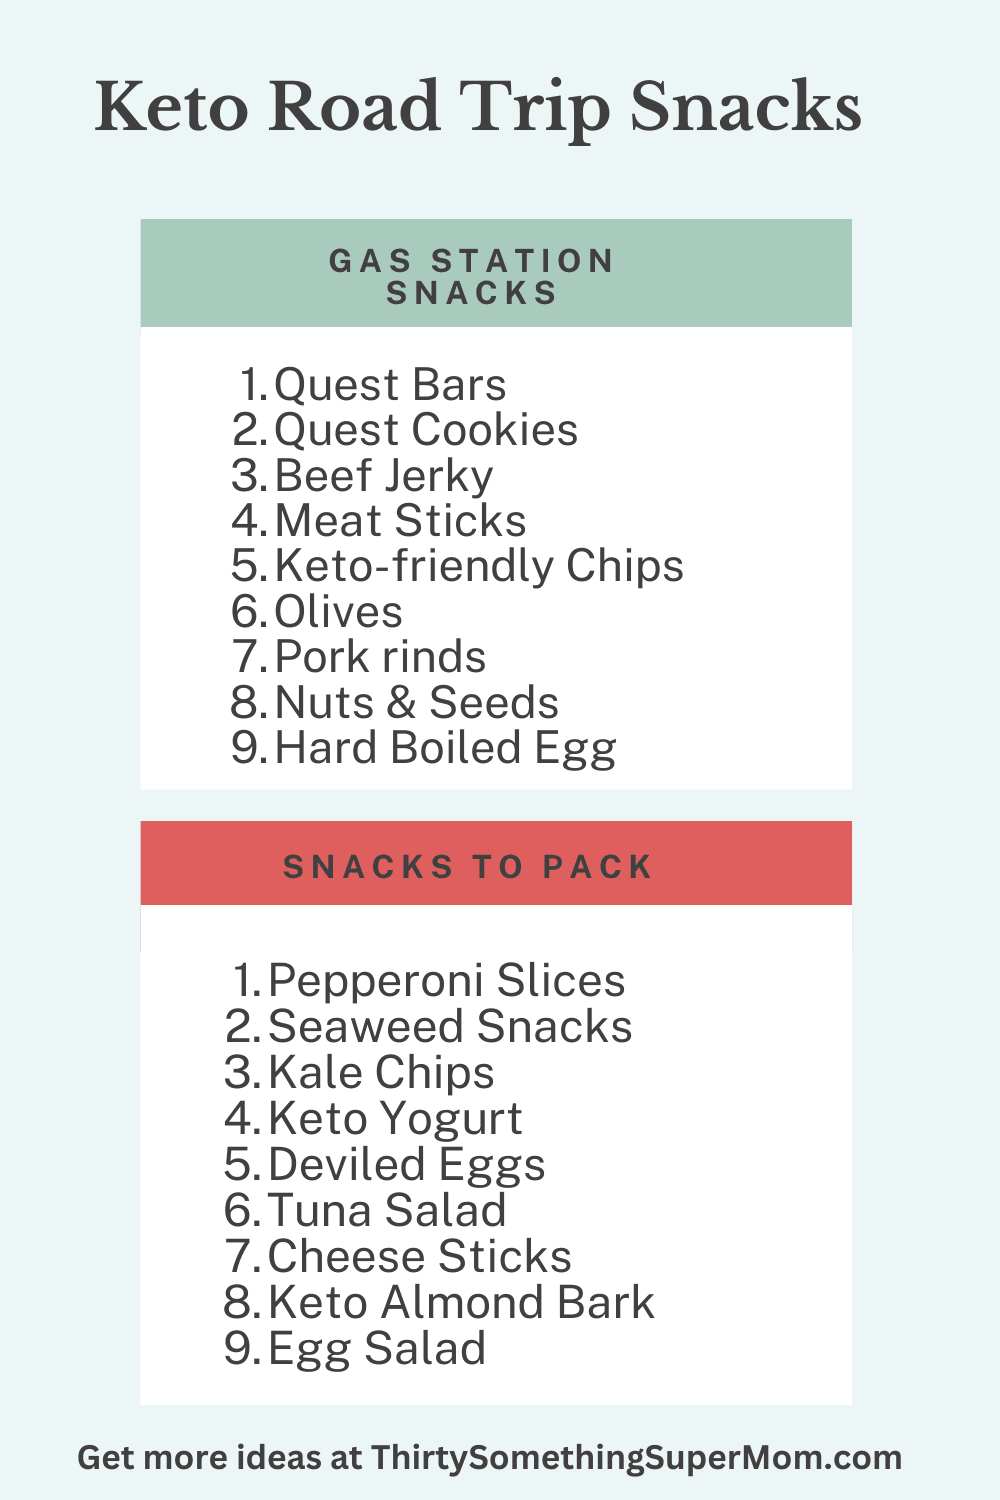 Keto road trip snacks list.